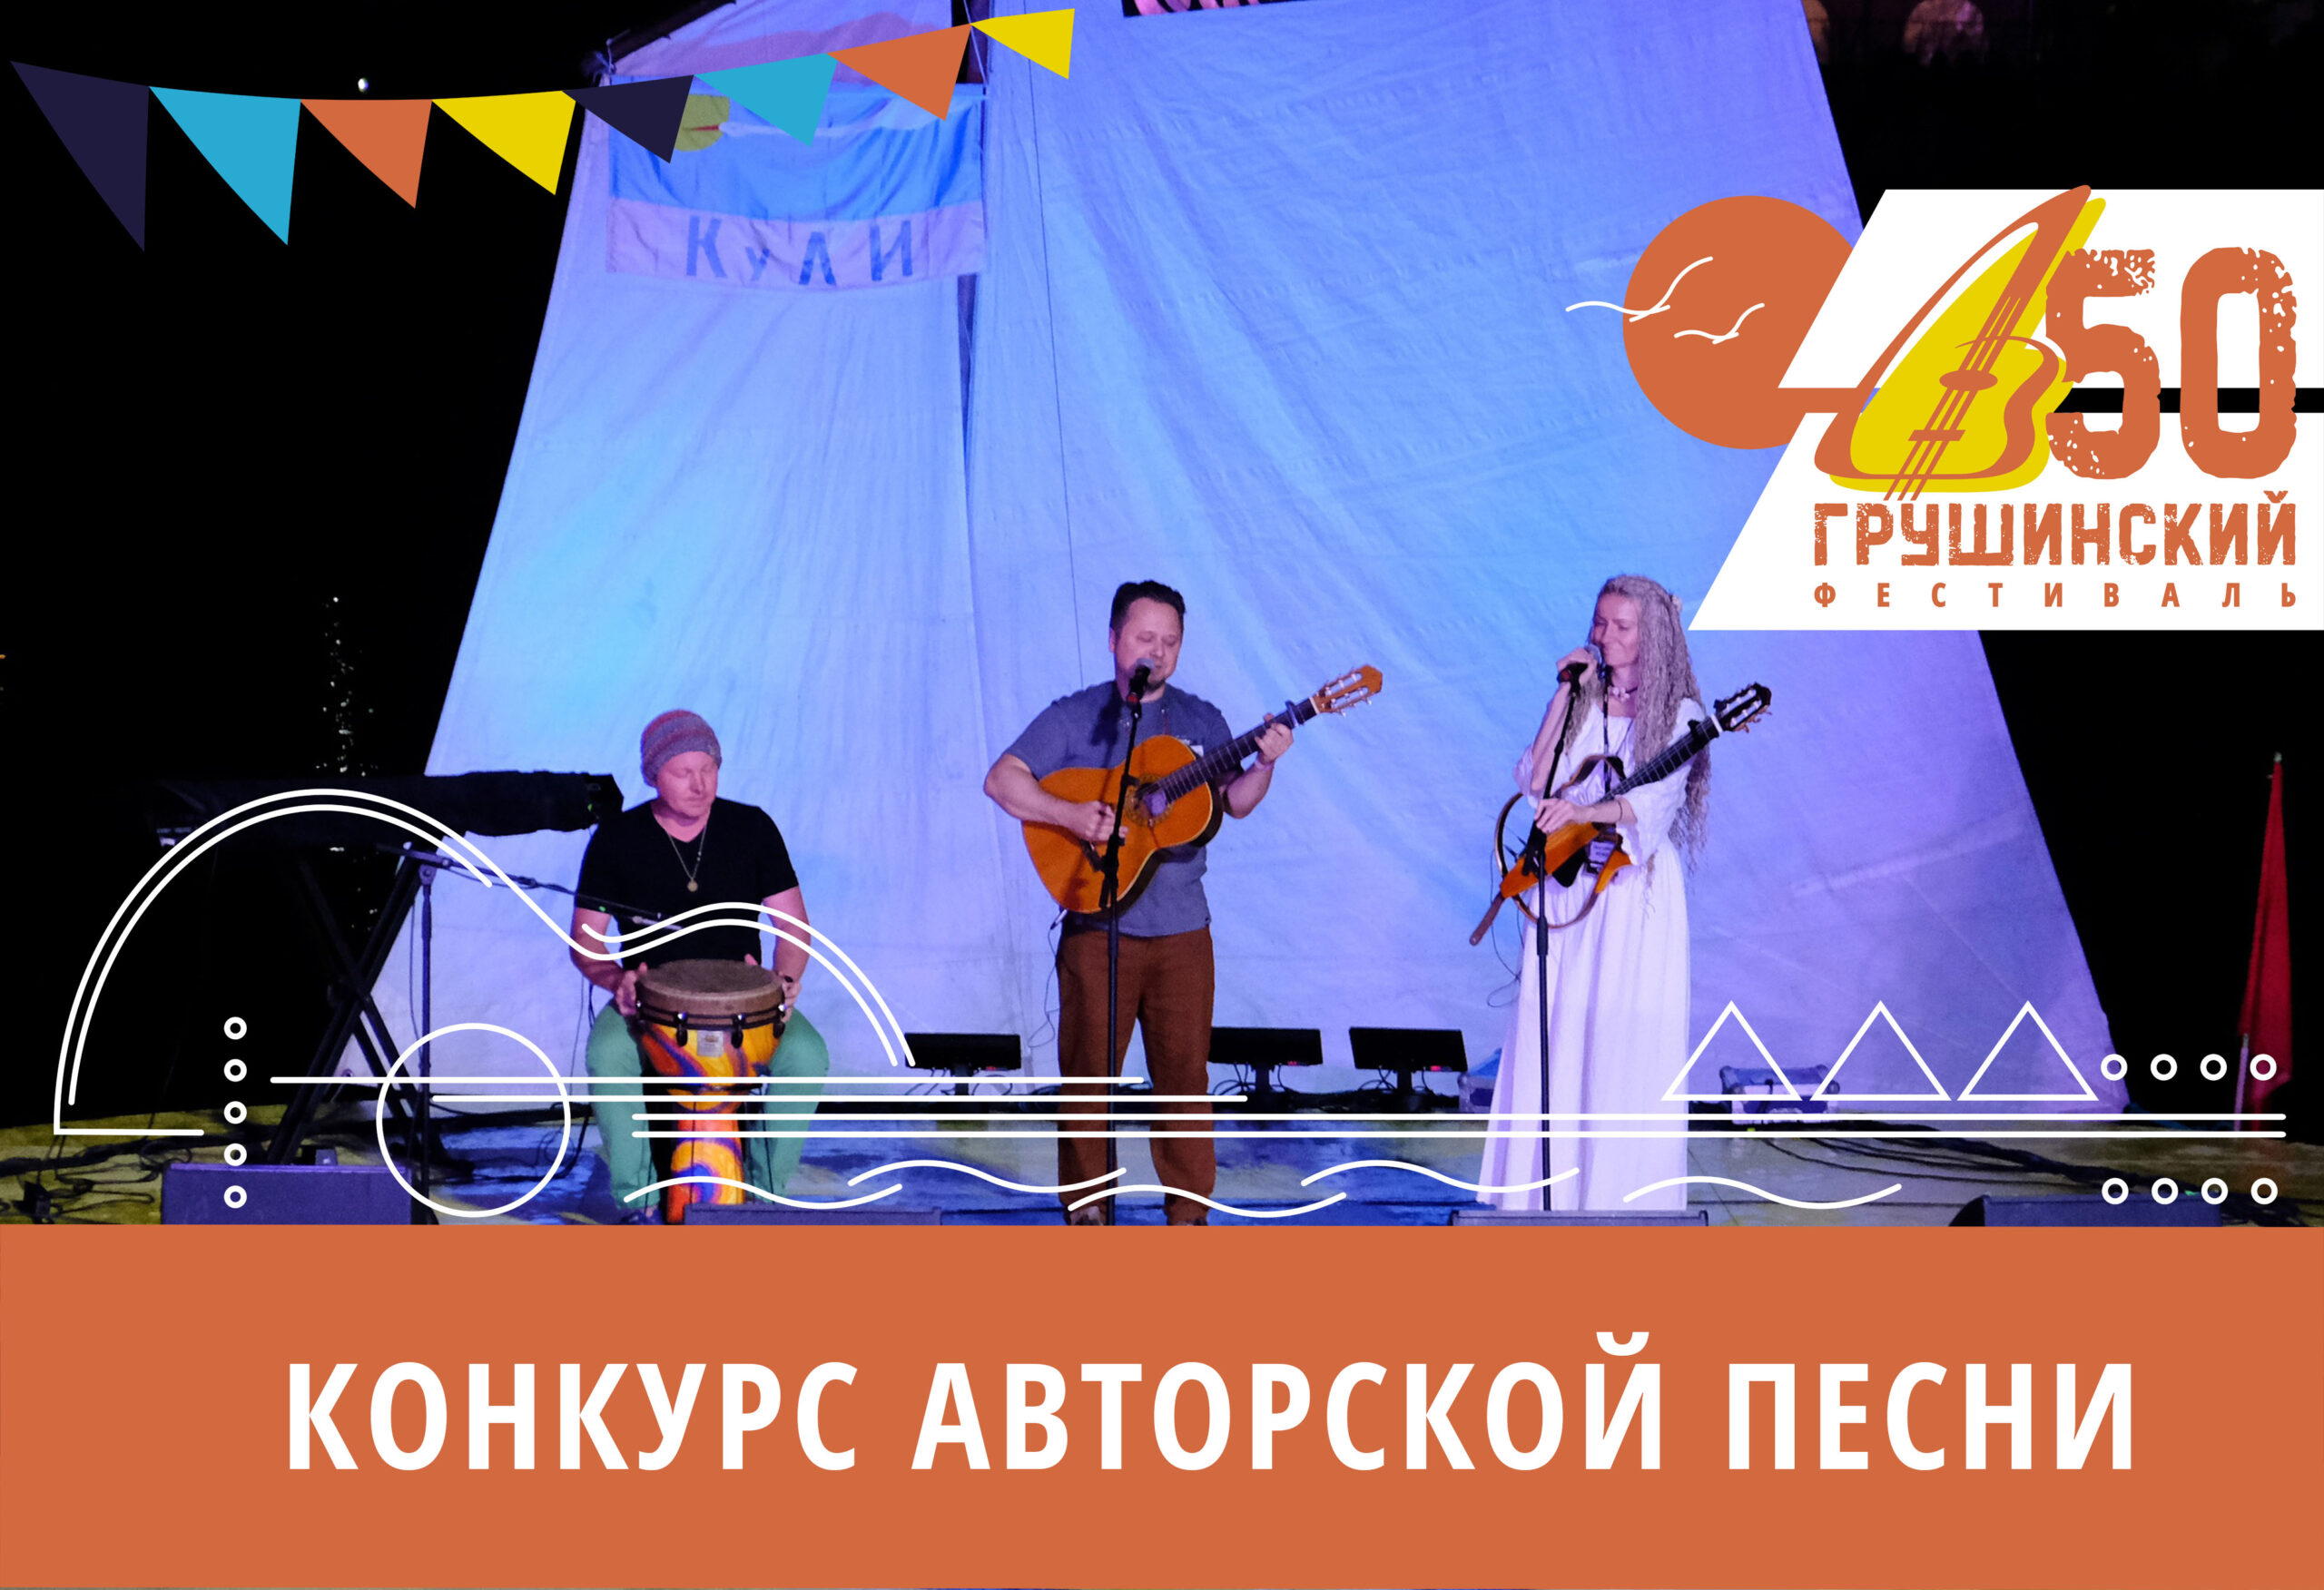 Заявки на участие в конкурсе авторской песни 50 Грушинского фестиваля прислали участники из более чем15 городов России и Белоруссии